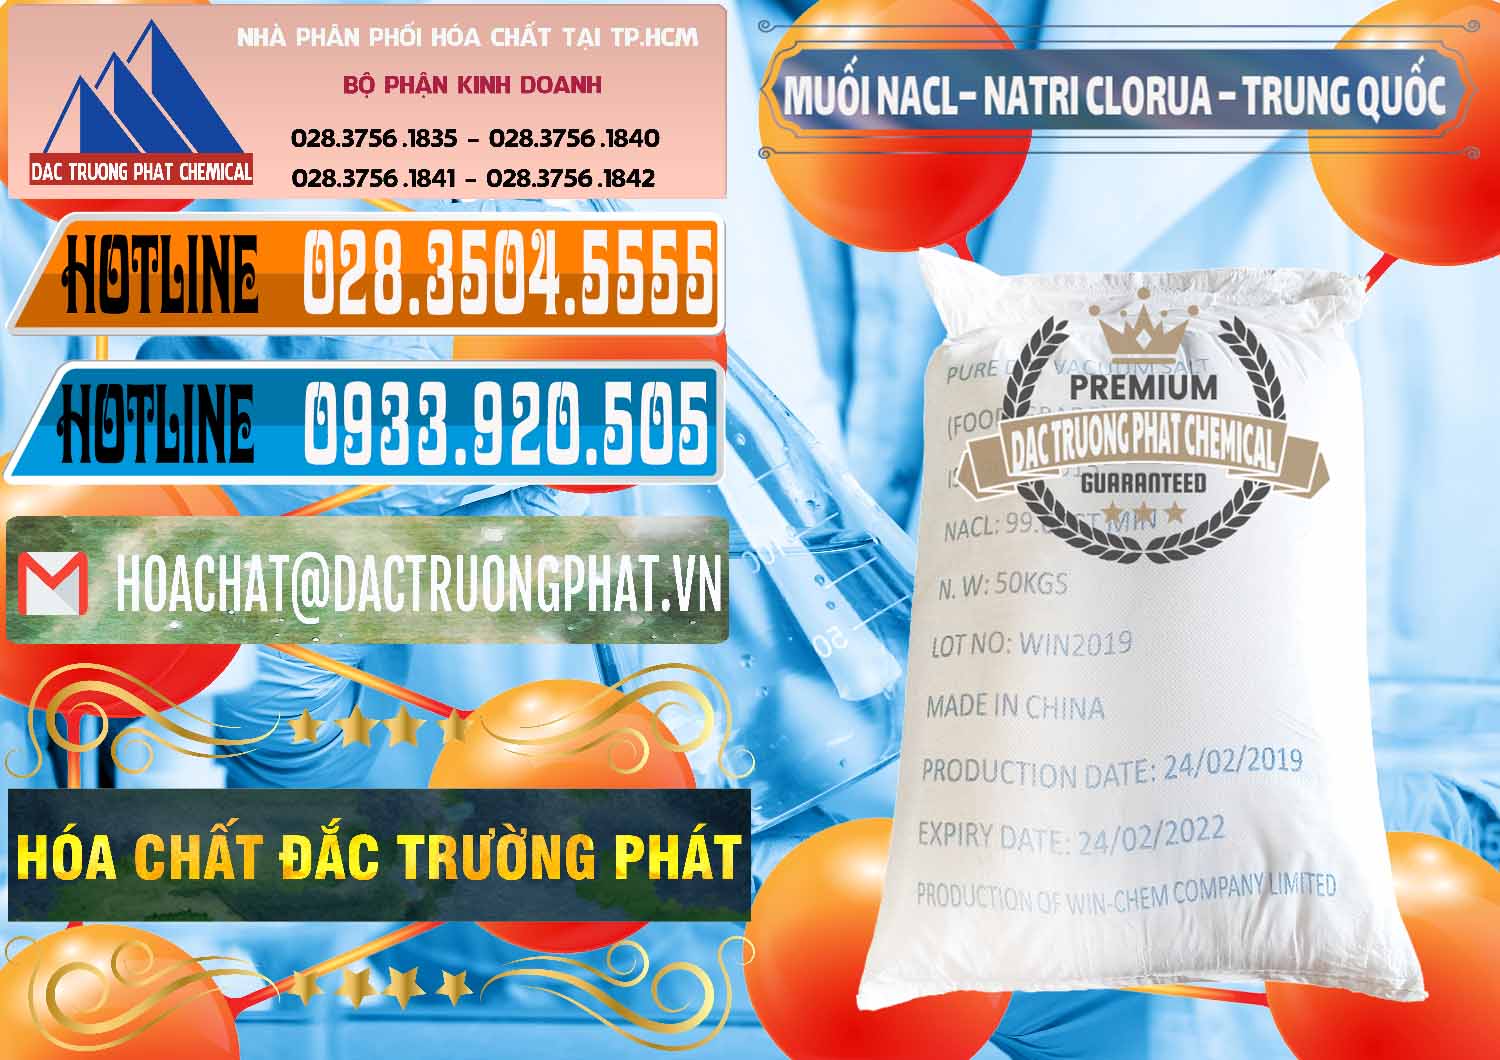 Nơi chuyên kinh doanh ( bán ) Muối NaCL – Sodium Chloride Trung Quốc China - 0097 - Cty chuyên kinh doanh - cung cấp hóa chất tại TP.HCM - stmp.net